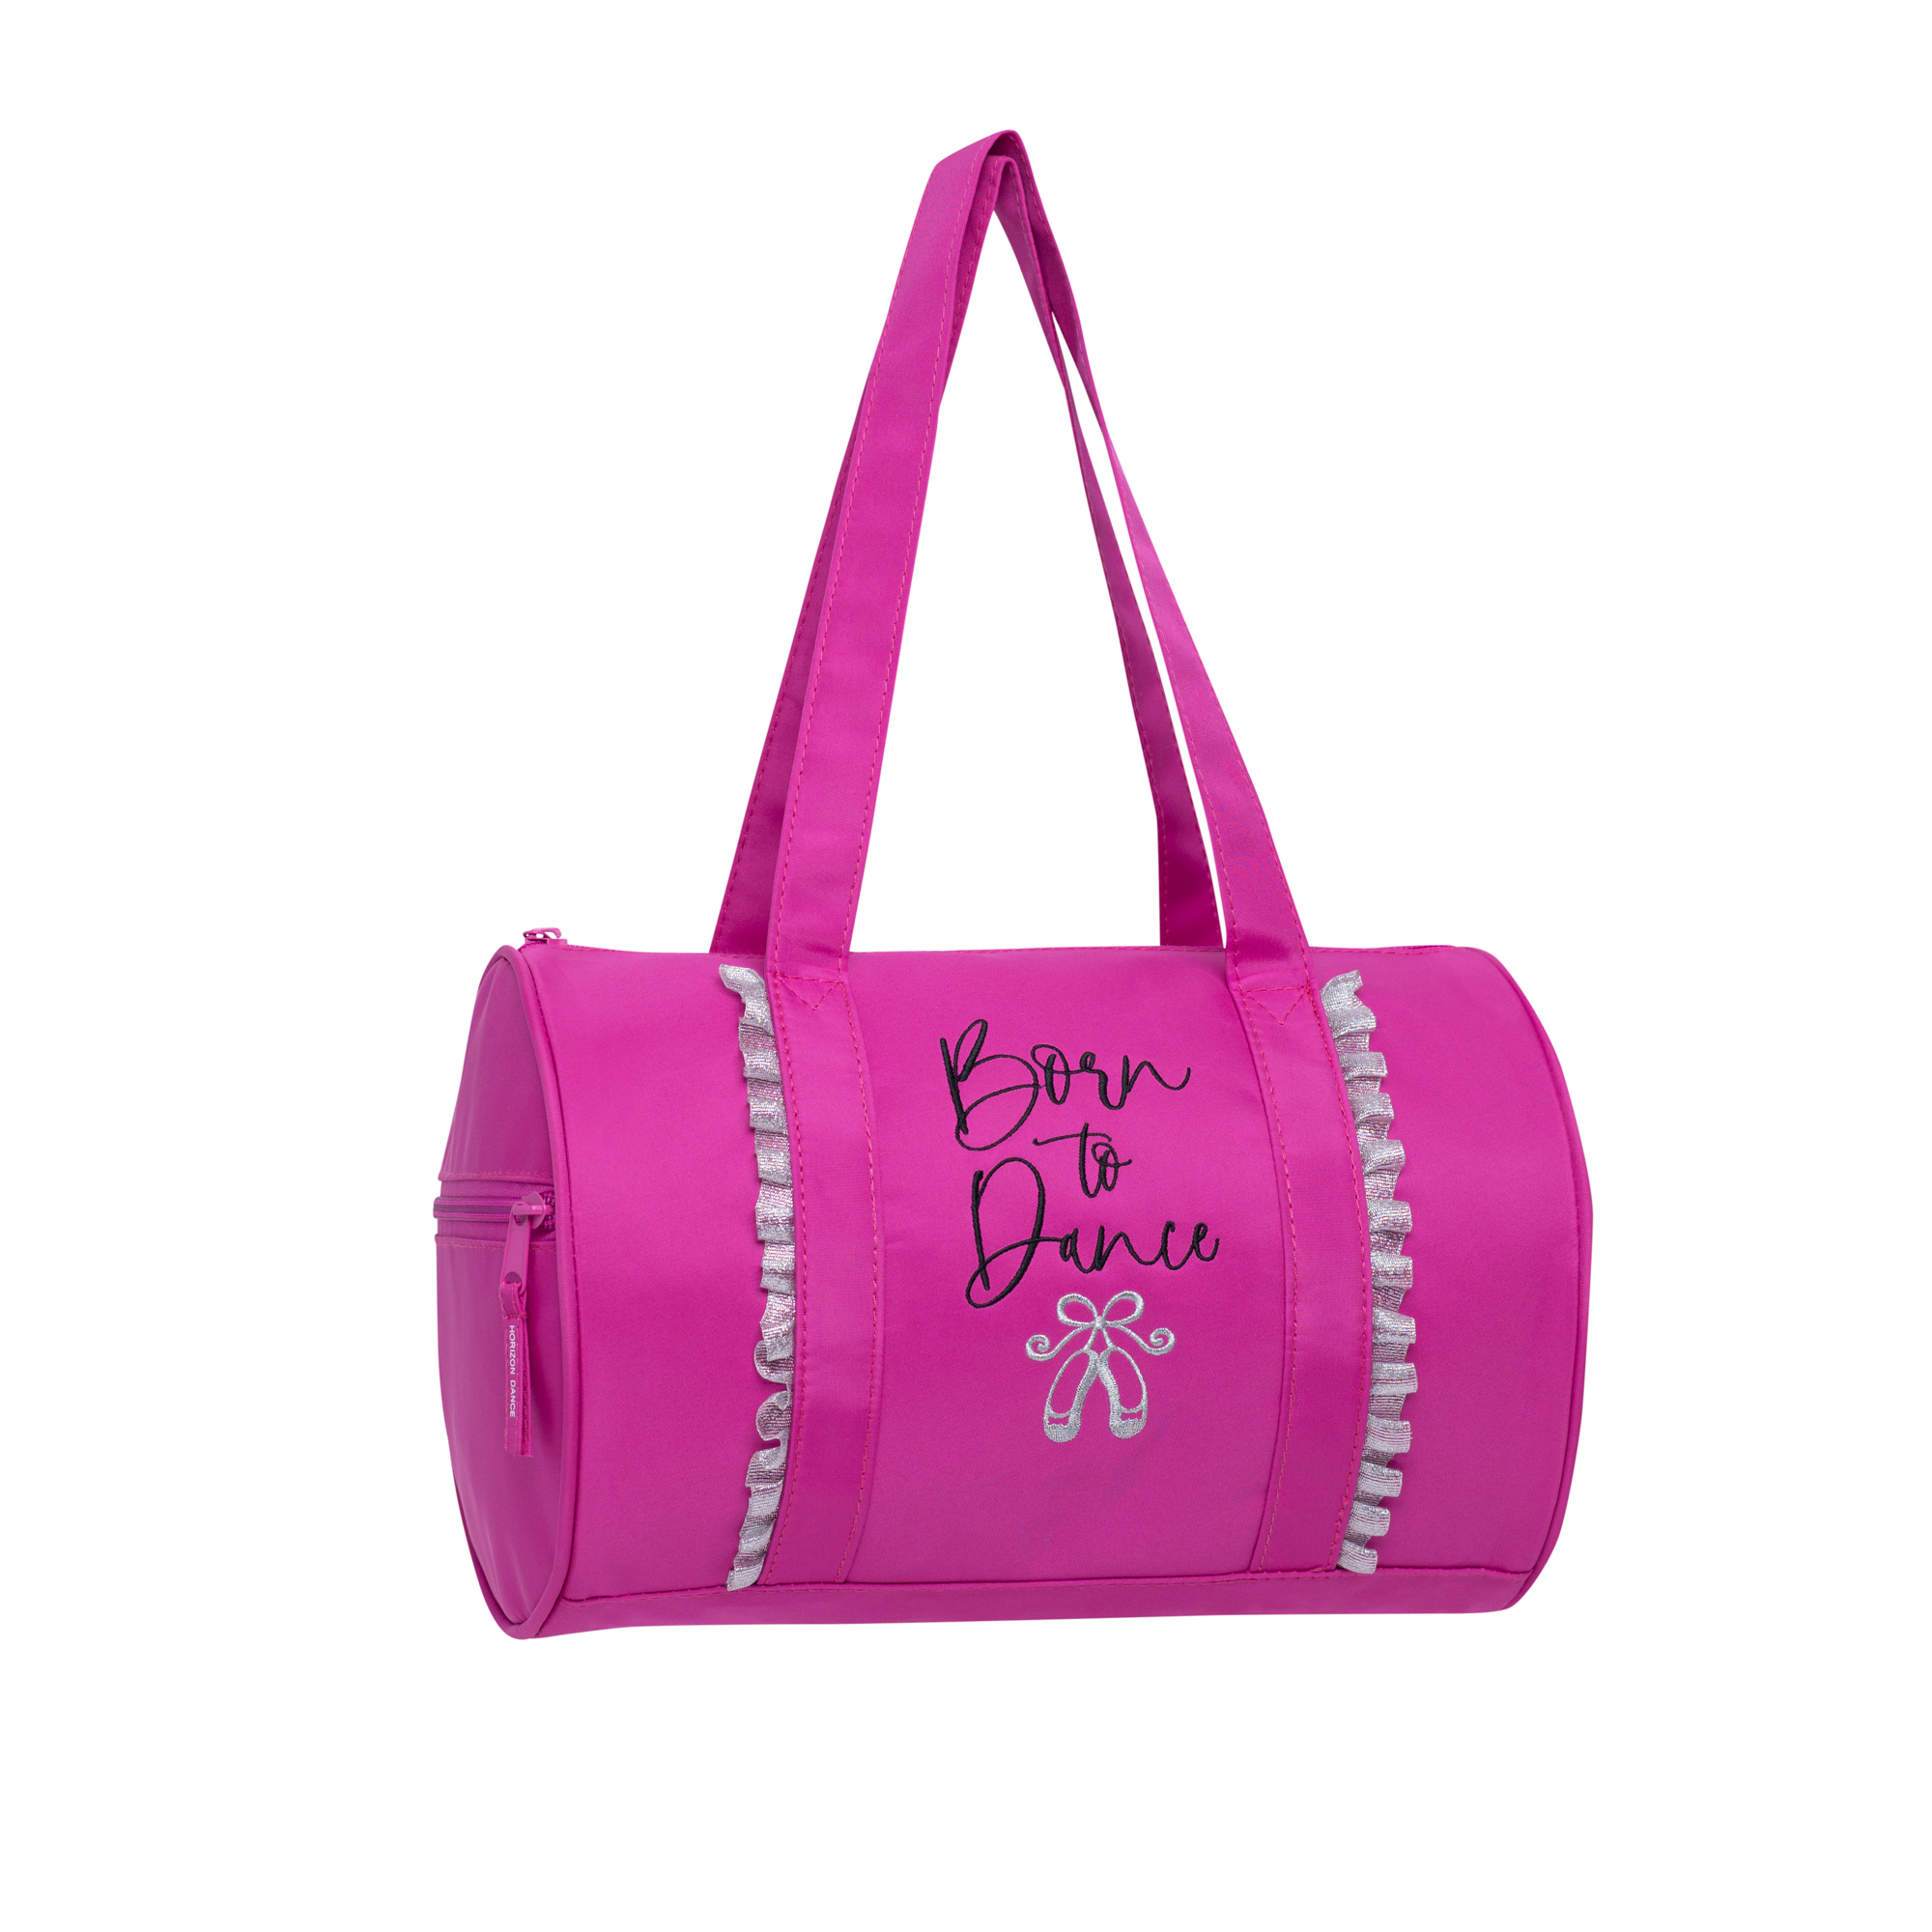 6155 - Syd Duffel - Pink - Horizon Dance Bags